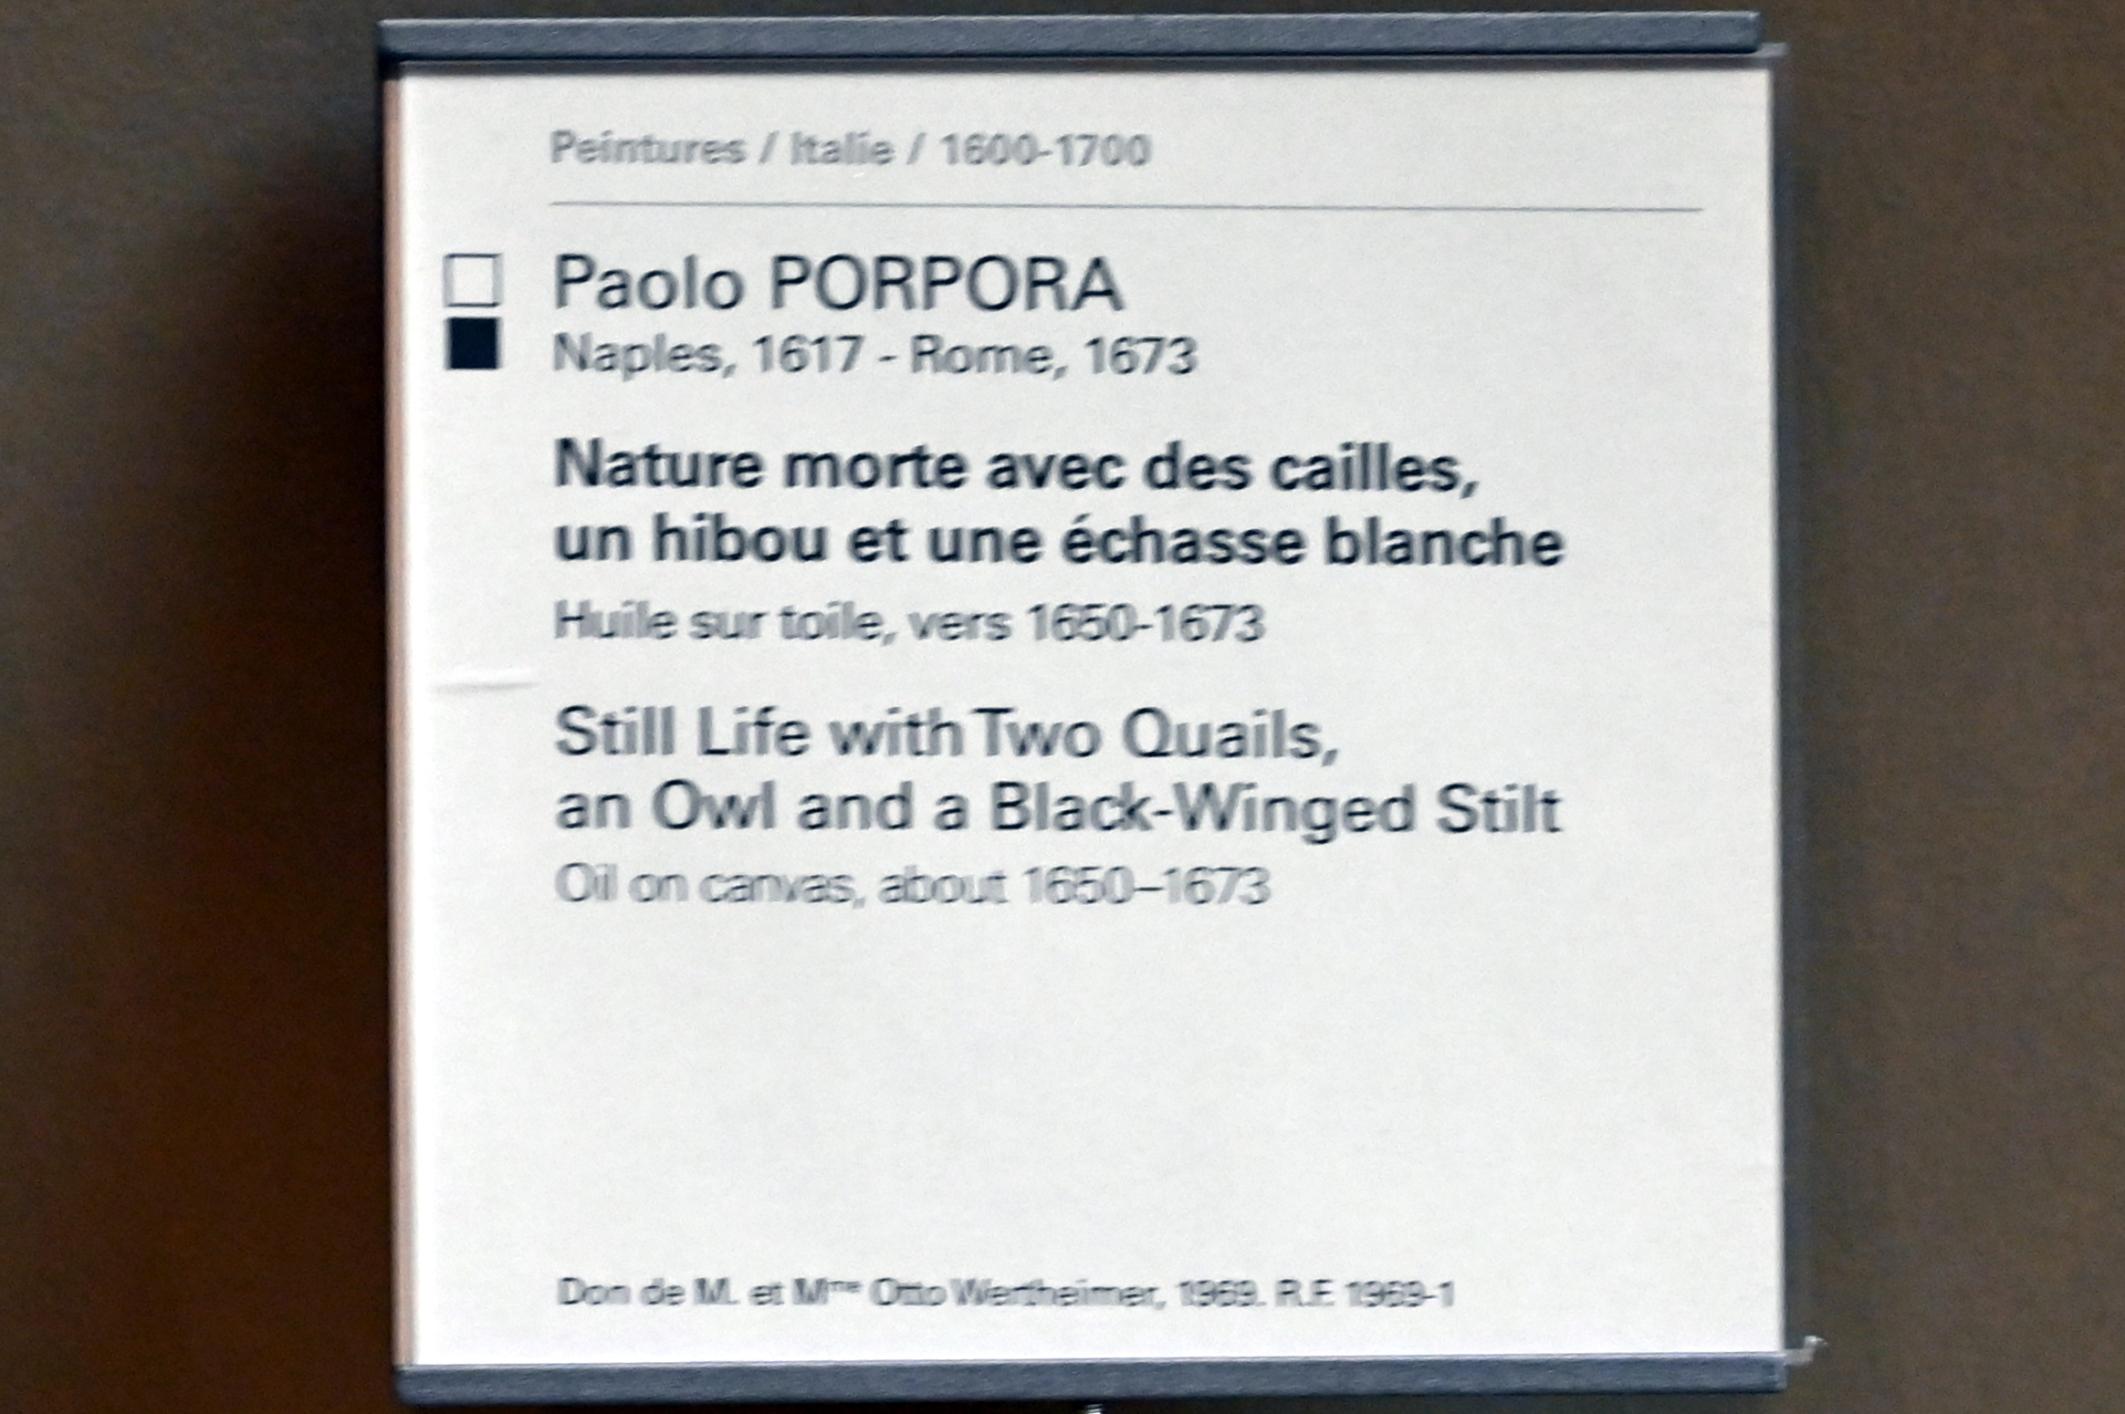 Paolo Porpora (1661), Stillleben mit zwei Wachteln, einer Eule und einem Stelzenläufer, Paris, Musée du Louvre, Saal 718, um 1650–1673, Bild 2/2